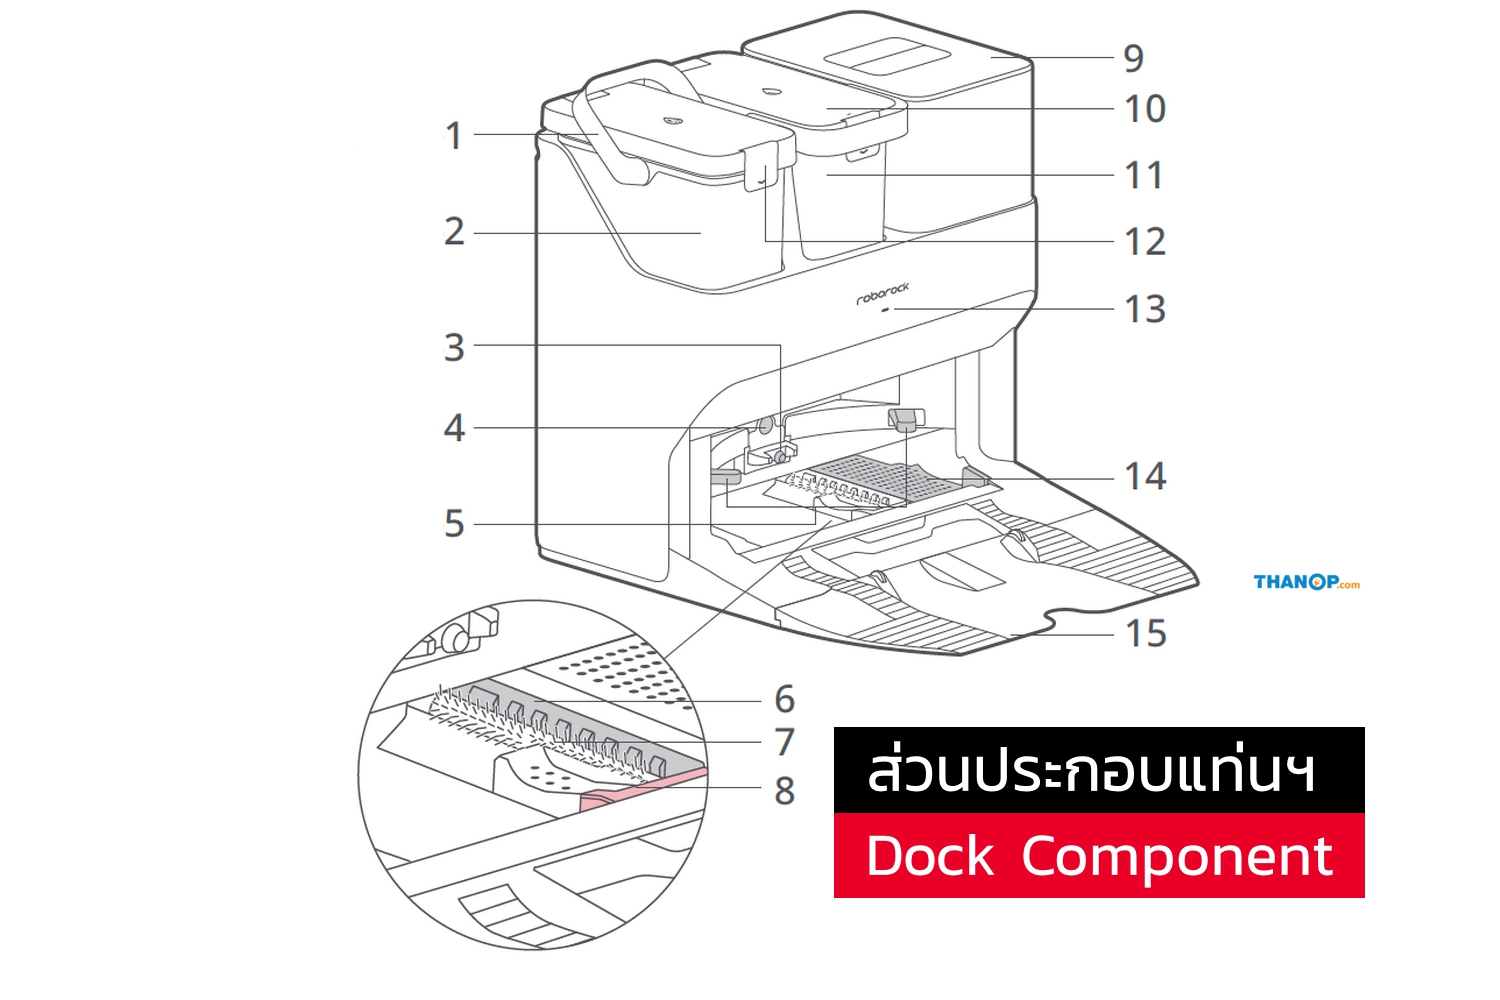 roborock-s7-maxv-ultra-component-auto-empty-wash-fill-dock